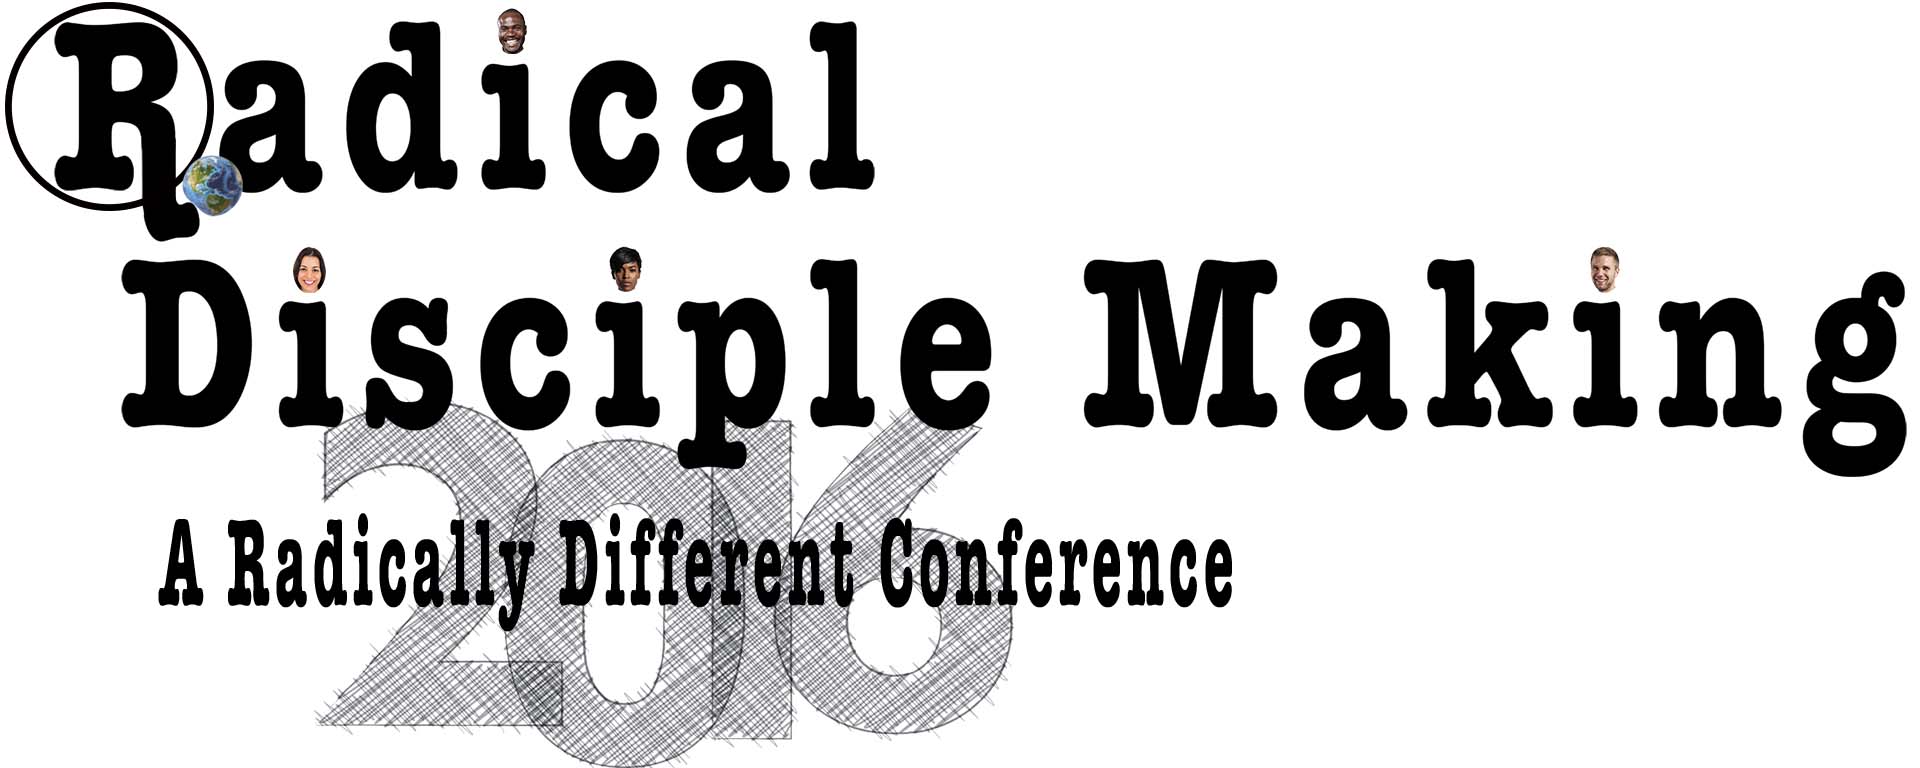 Radical Disciple Making